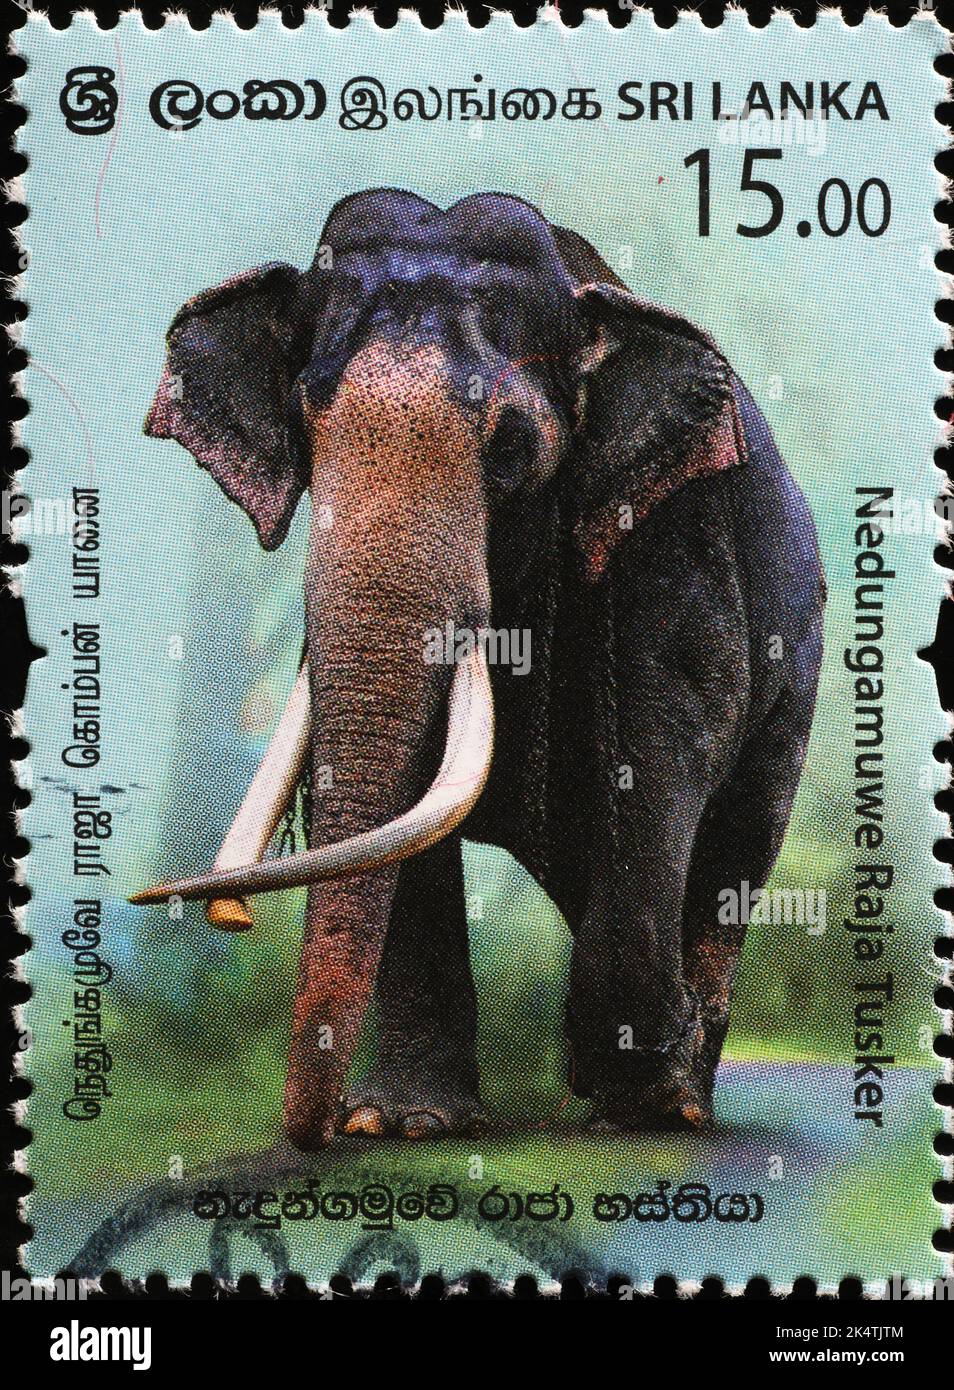 Asiatischer Elefant mit riesigen Stoßzähnen auf Briefmarke aus Sri Lanka Stockfoto